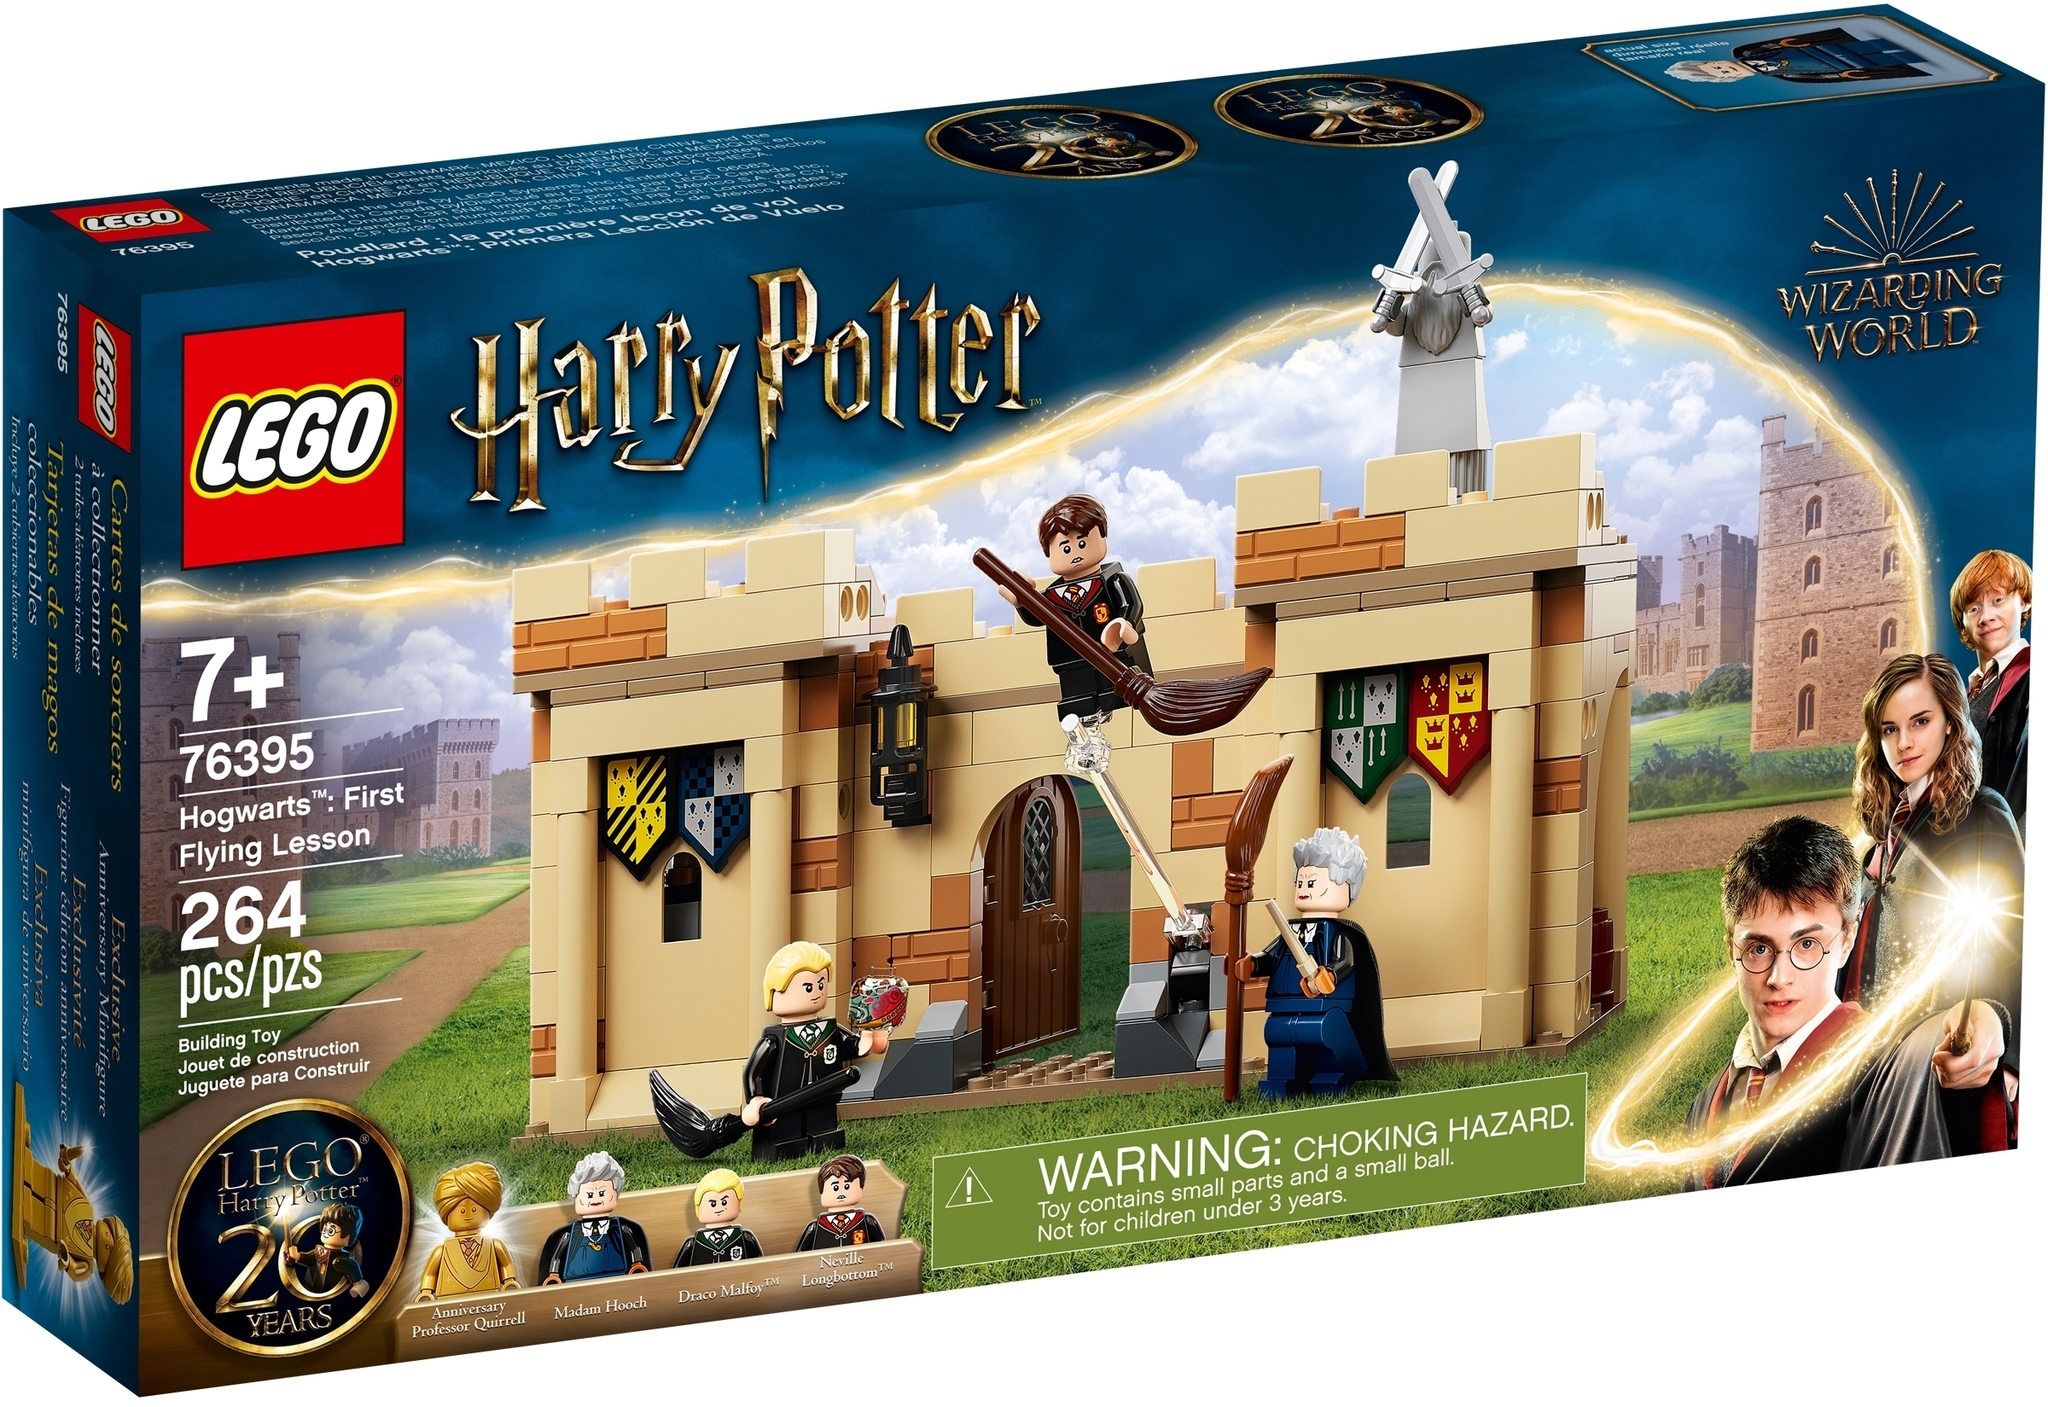 LEGO Harry Potter 75954 - La Sala Grande Di Hogwarts™